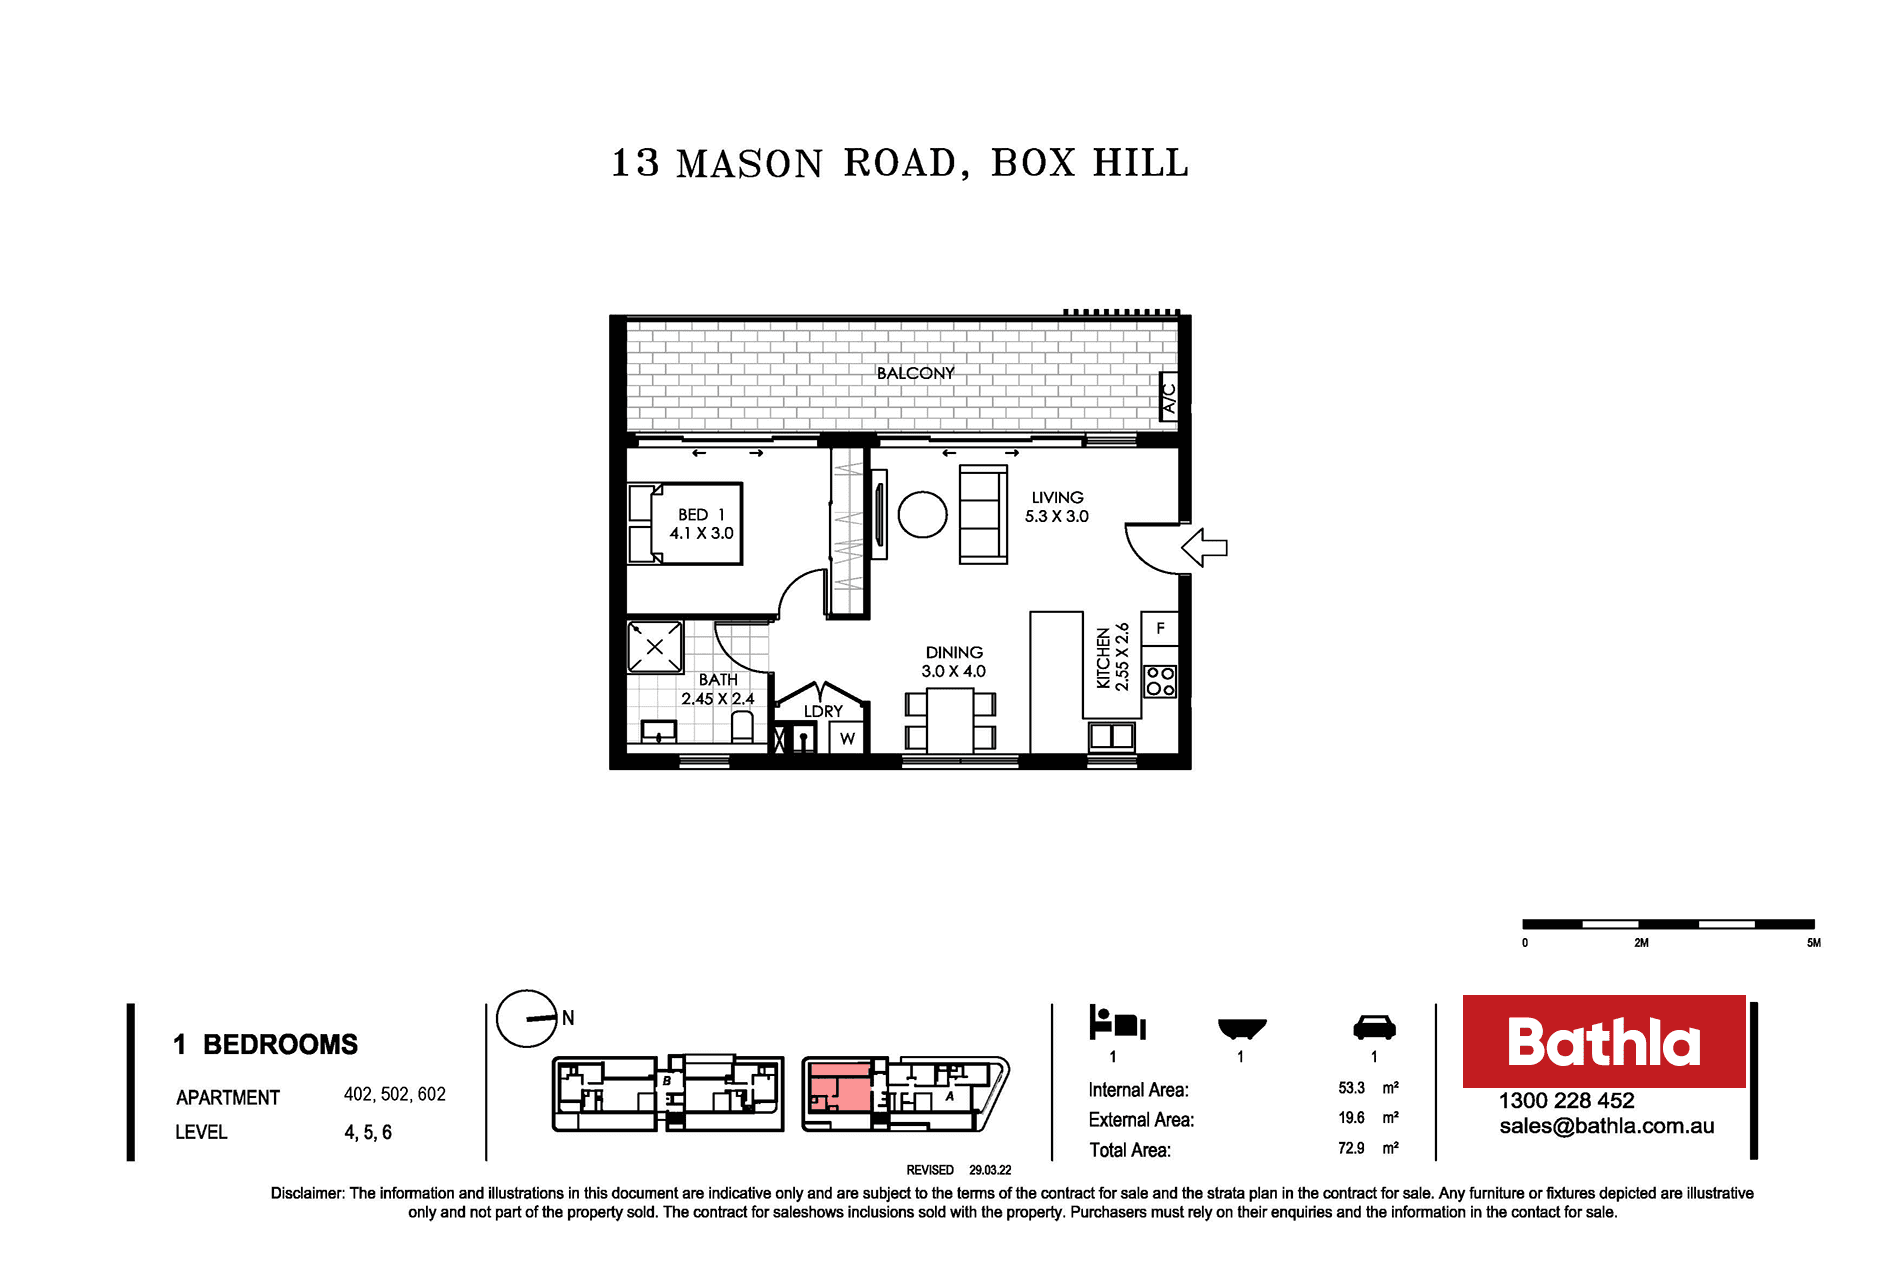 Unit 402 / 13 Mason Road (Proposed Address), BOX HILL, NSW 2765